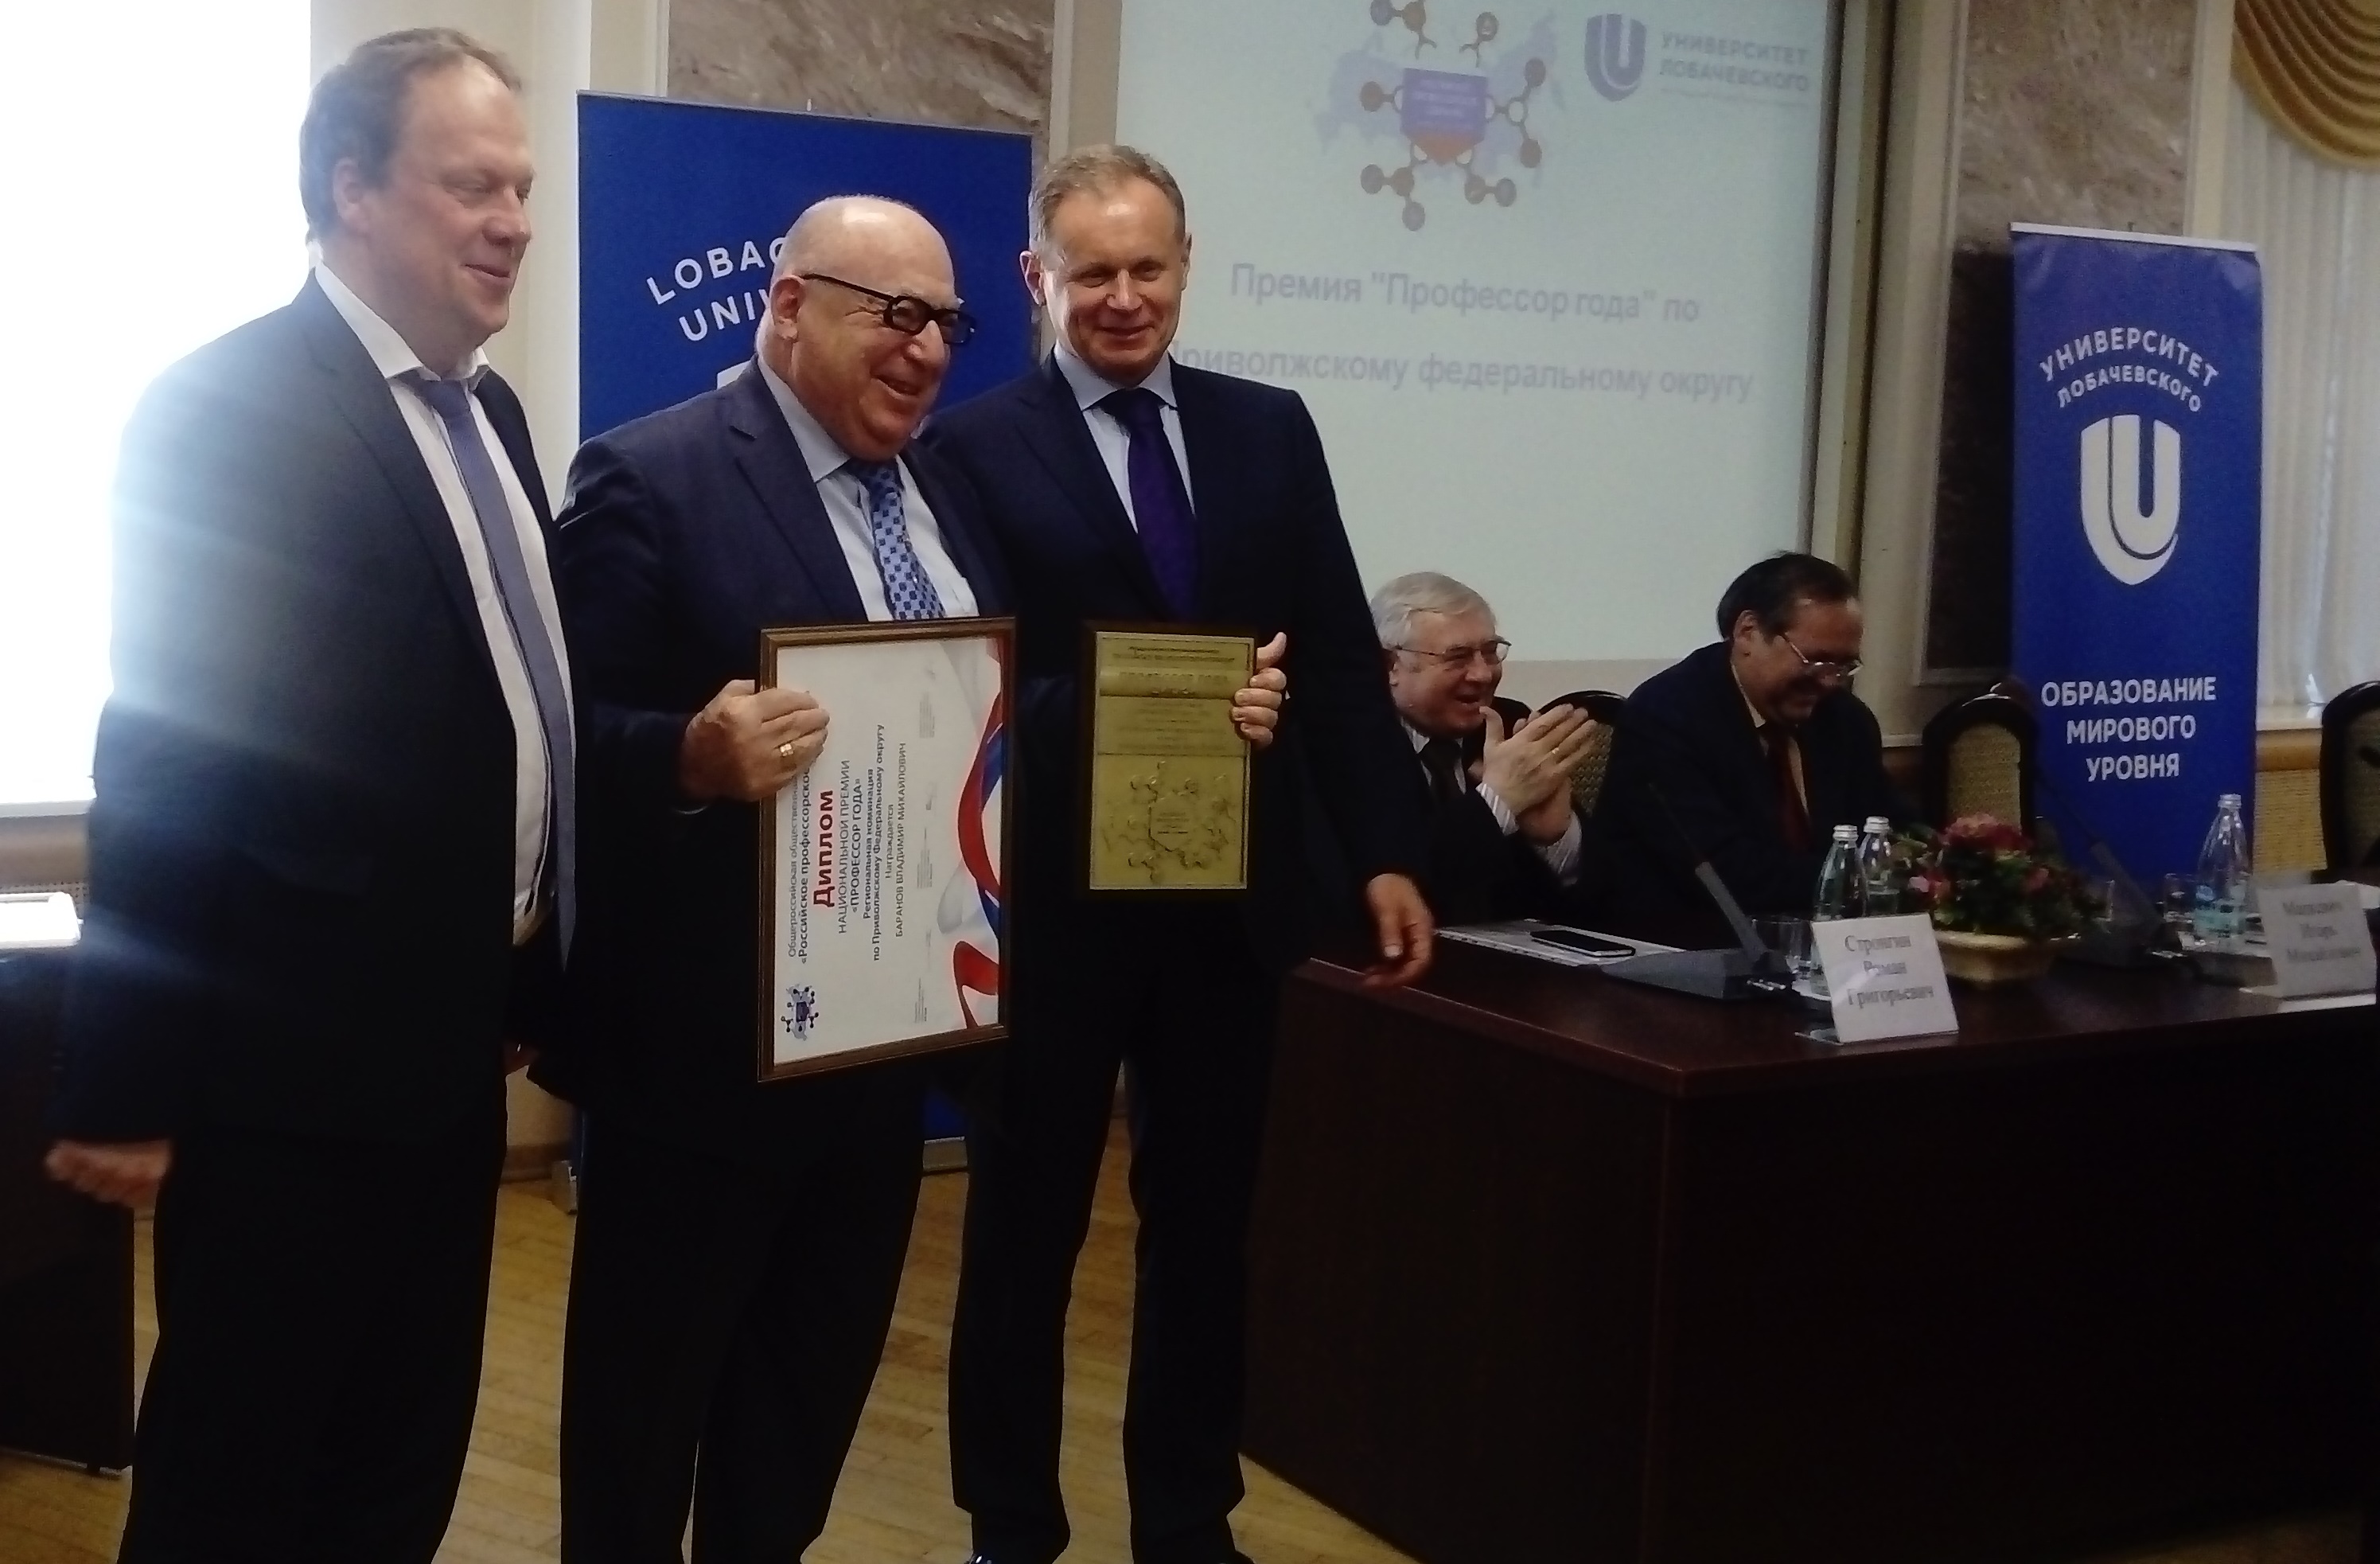 Двое ученых из Нижнего Новгорода стали лауреатами общенациональной премии - фото 1